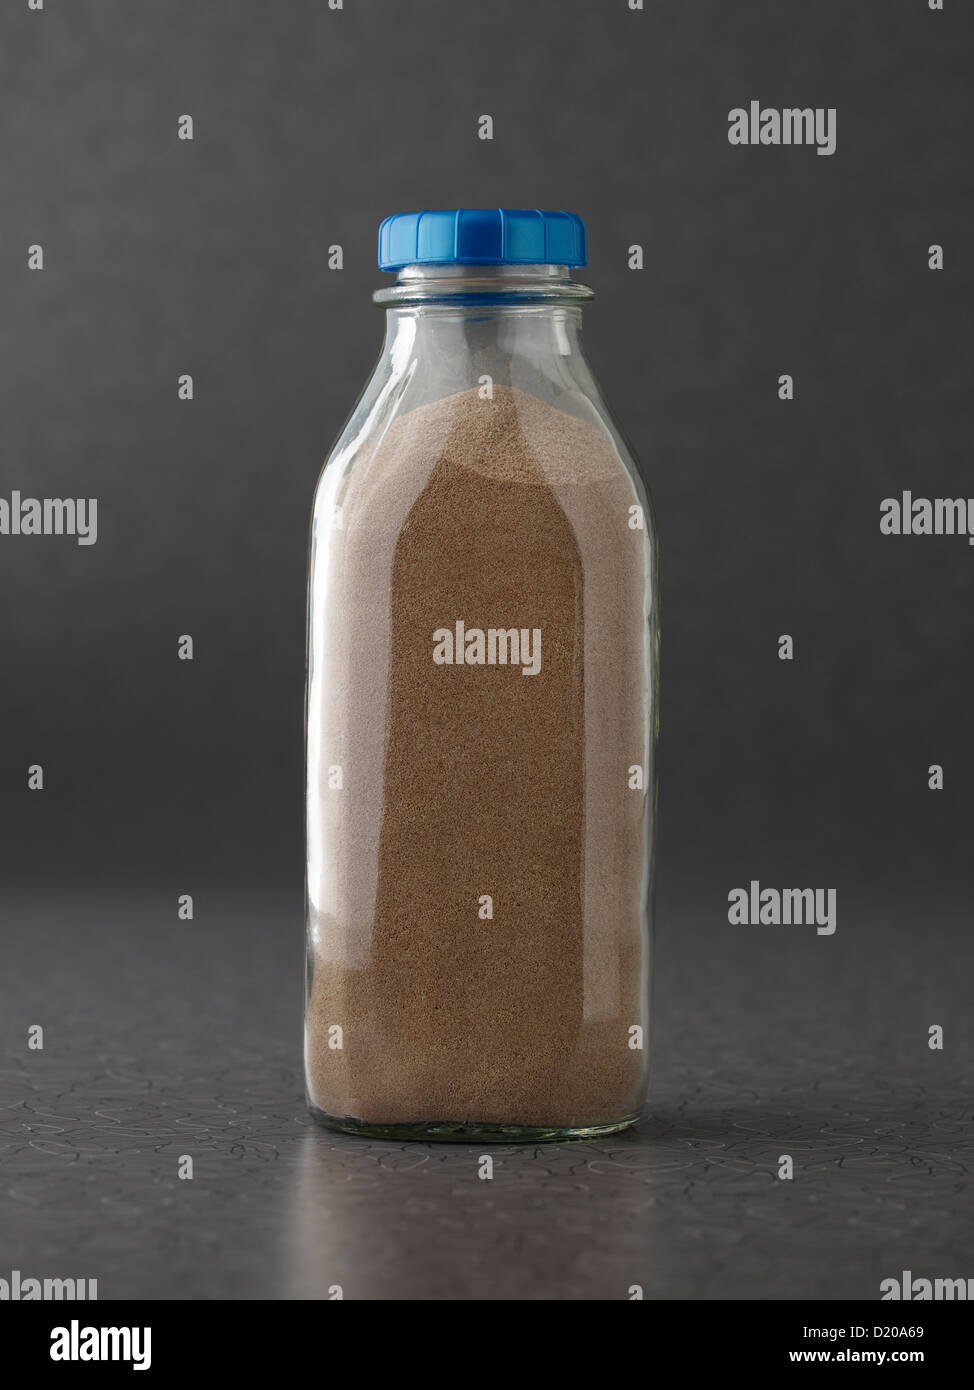 Chocolate Milk Protein Powder in Bottle Stock Photo